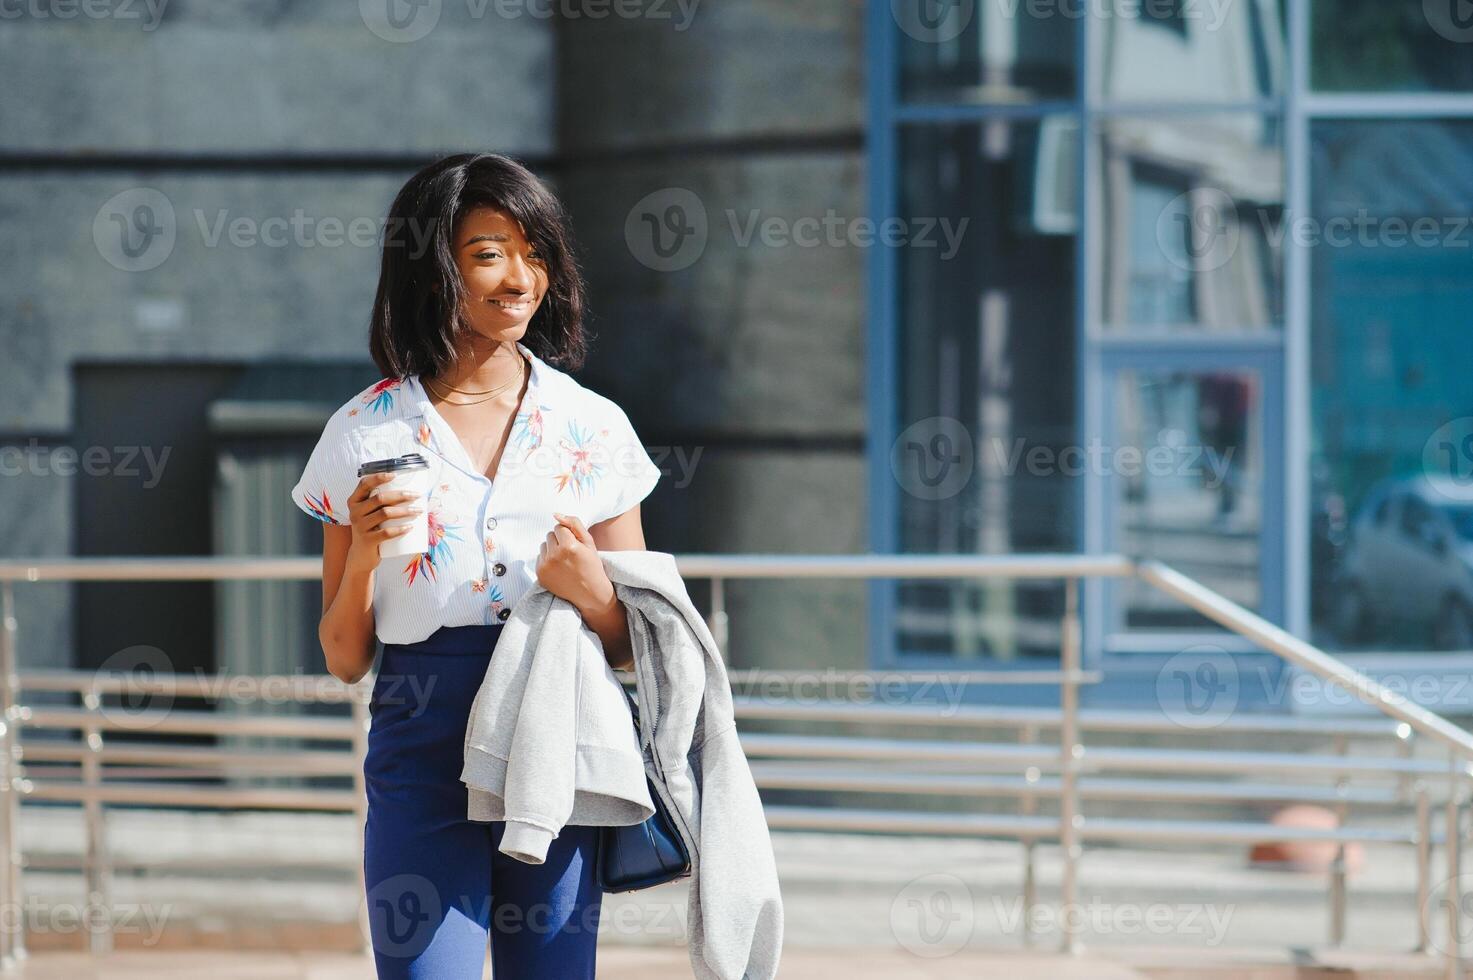 negocio y personas concepto - joven sonriente africano americano mujer de negocios con café taza en ciudad foto